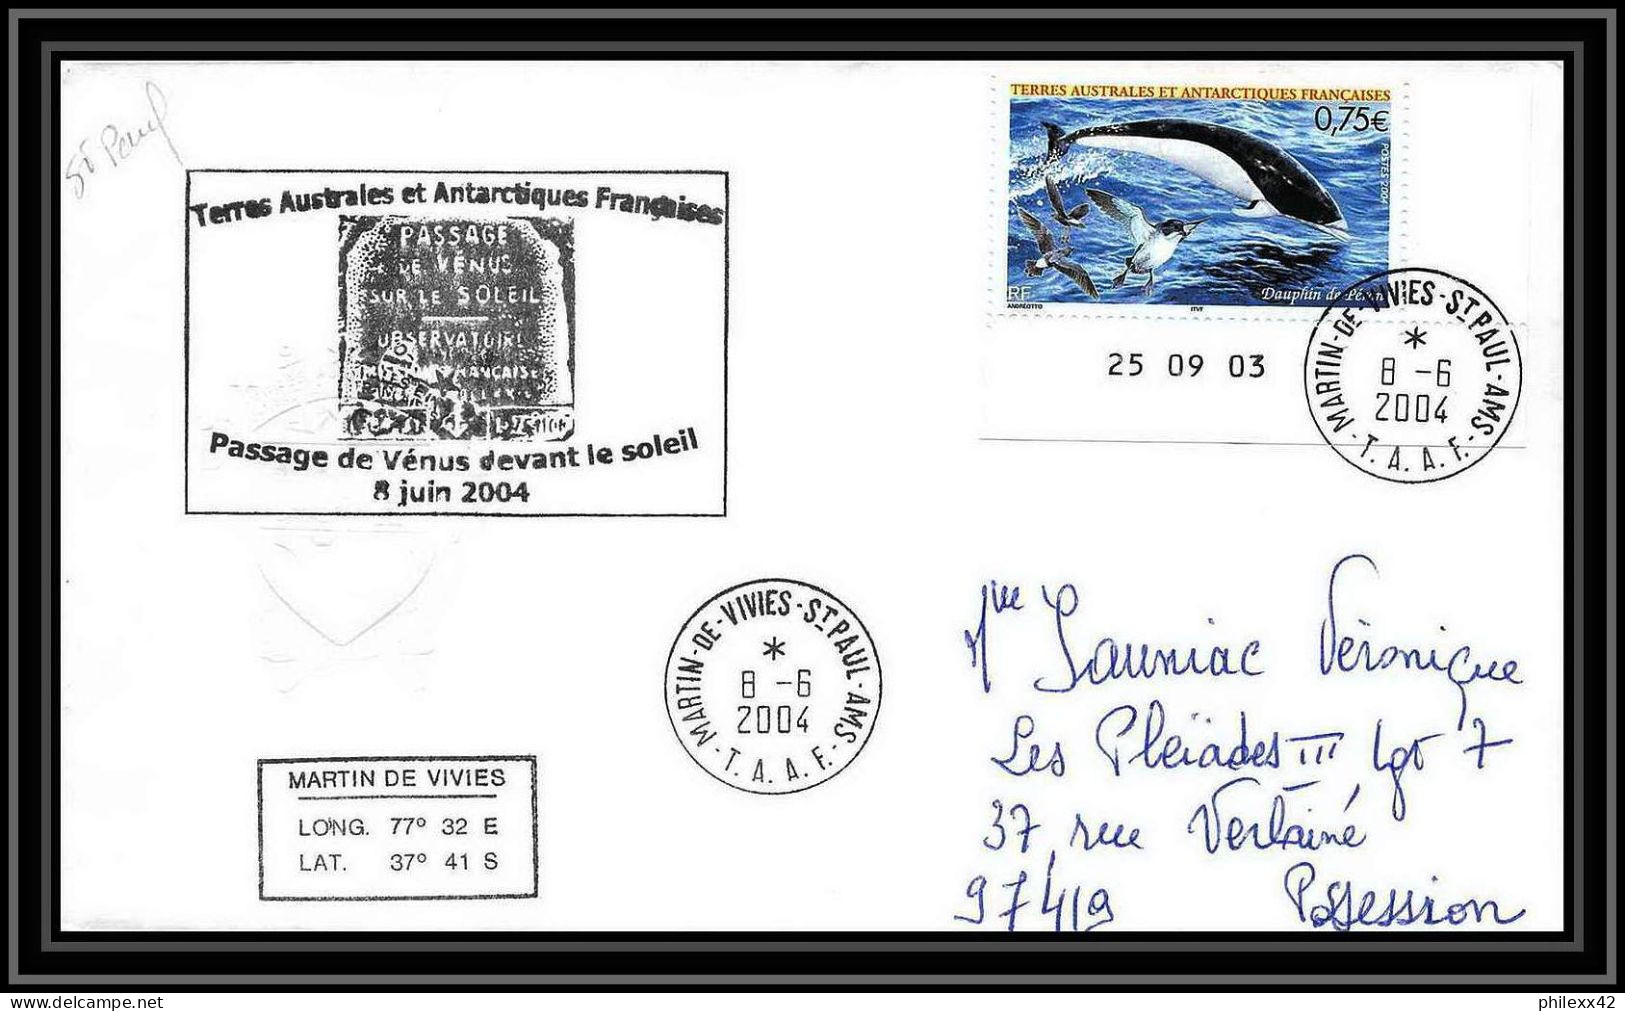 2446 ANTARCTIC Terres Australes TAAF Lettre Dufresne 2 N°395 PASSAGE DE VENUS DEVANT LE SOLEIL 2004 Coin Daté Dauphin - Expéditions Antarctiques